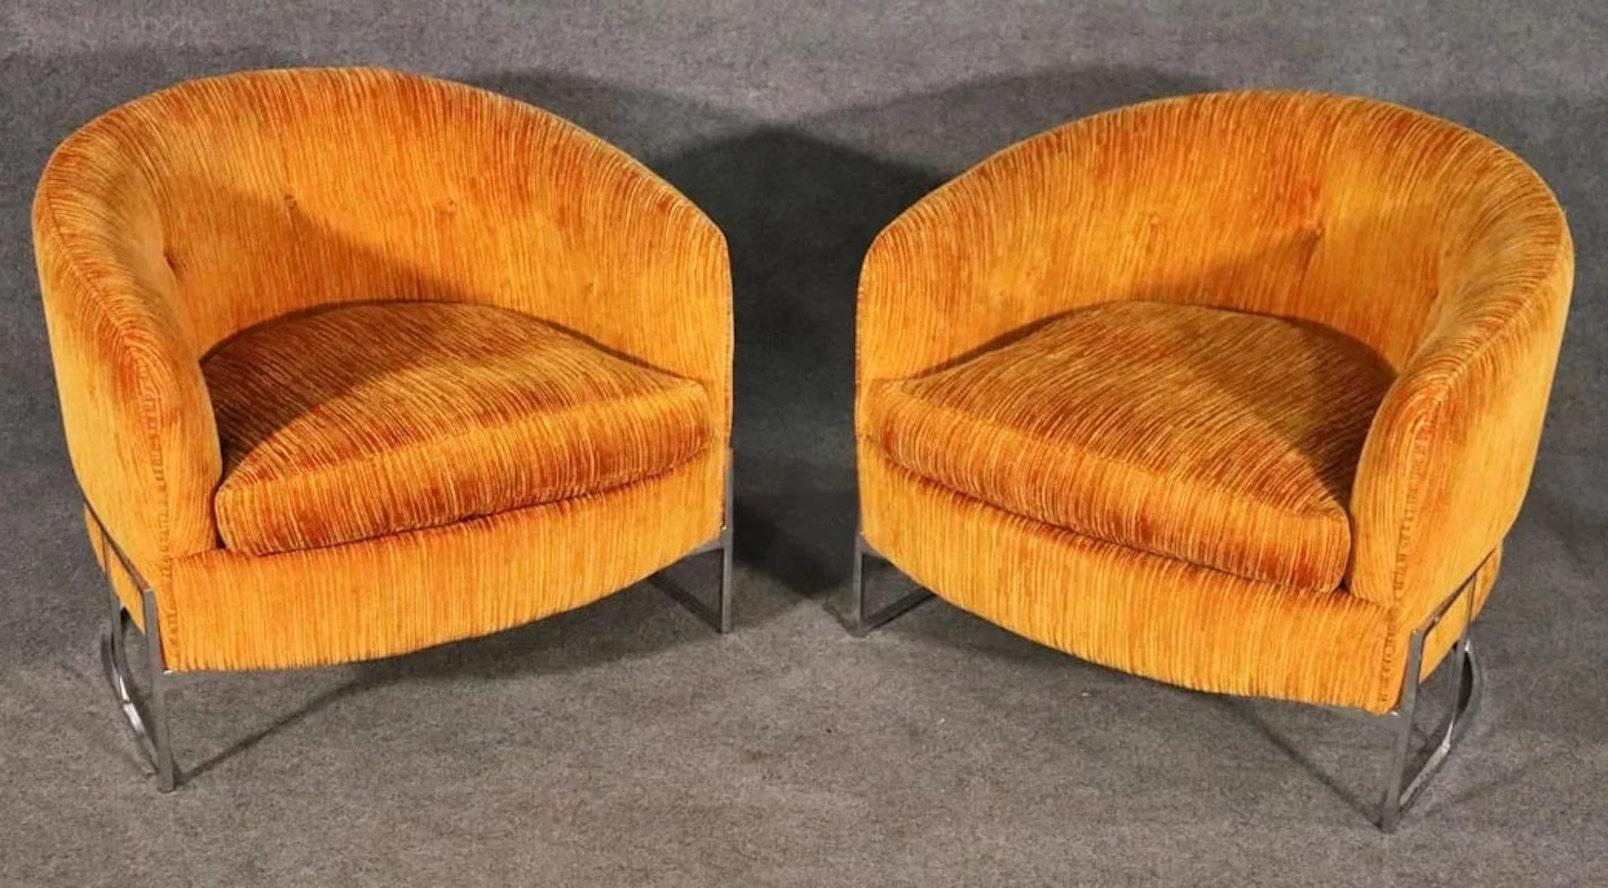 Zwei klassische Clubsessel im Stil der Jahrhundertmitte mit poliertem Chromgestell. Diese Vintage-Stühle sind sauber und einsatzbereit. Dank ihrer attraktiven Tonnenform können sie überall im Raum aufgestellt werden.
Bitte bestätigen Sie den